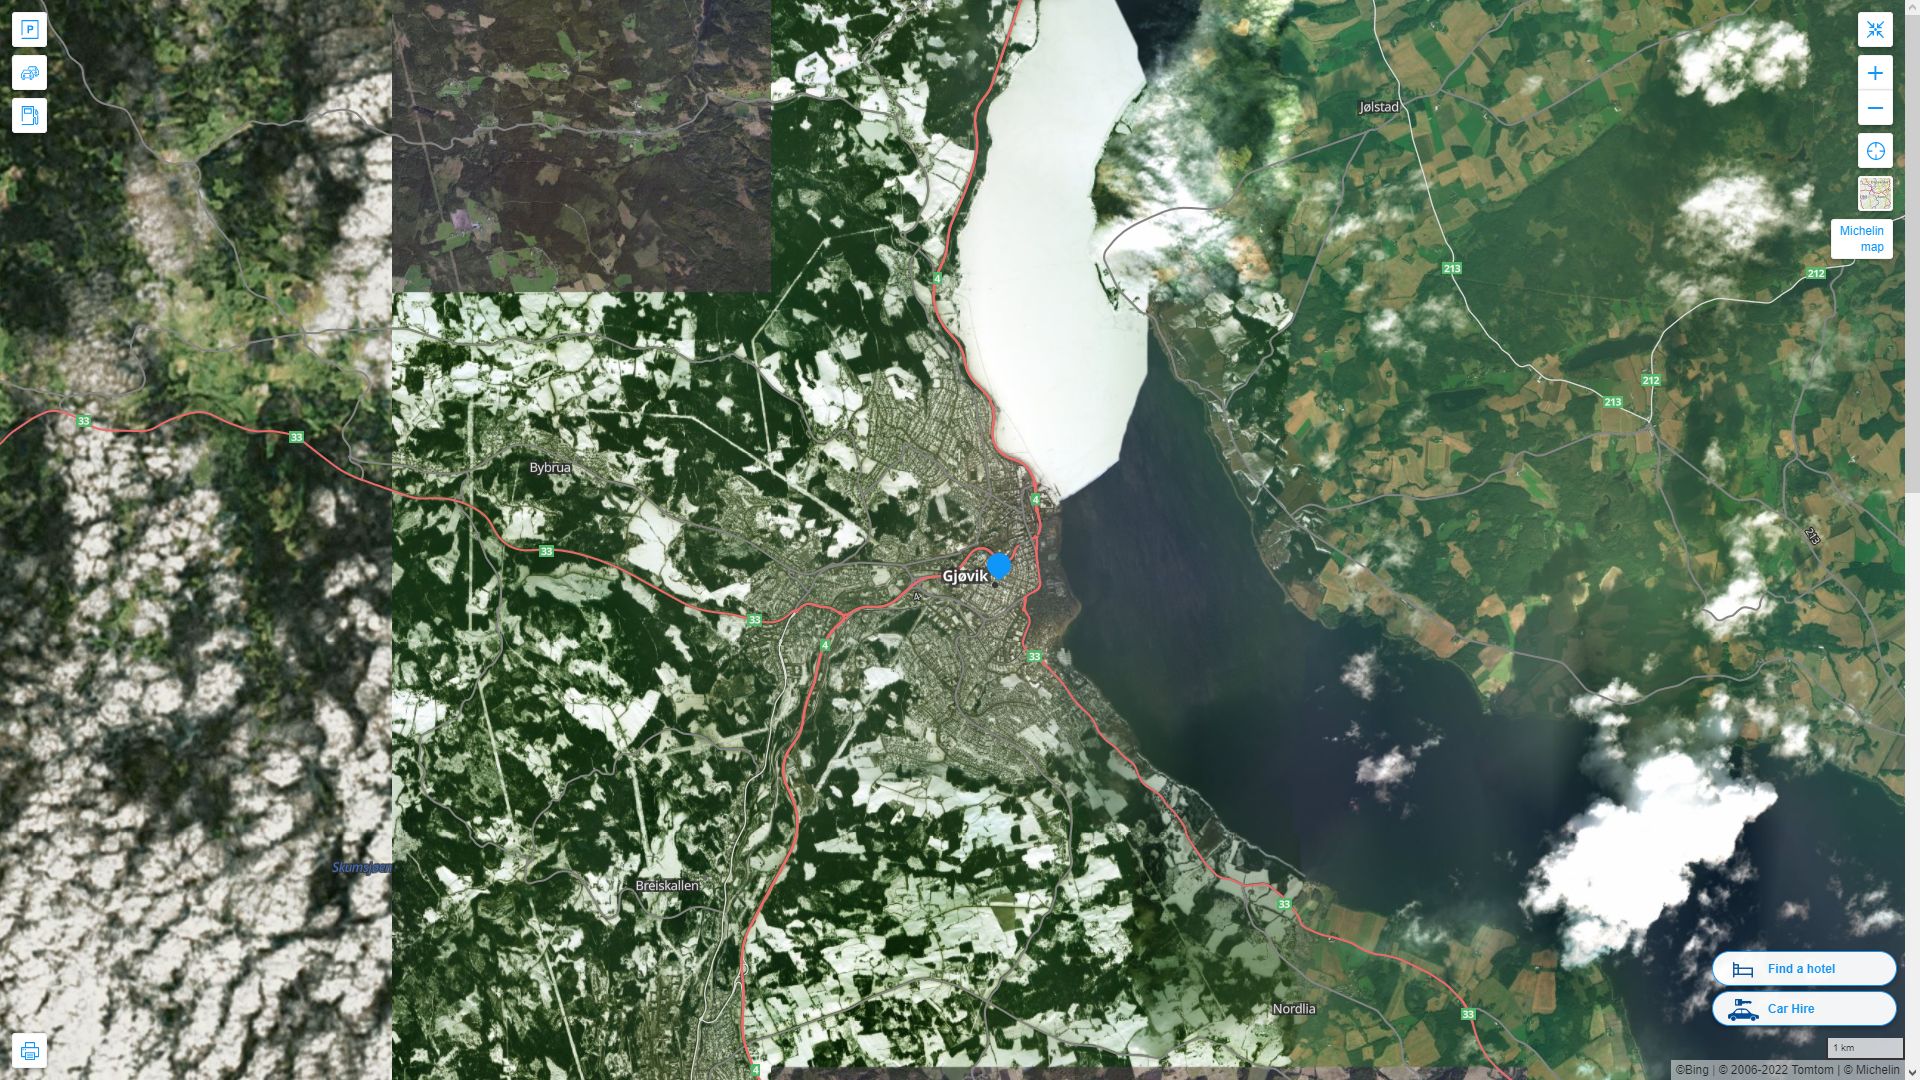 Gjovik Norvege Autoroute et carte routiere avec vue satellite